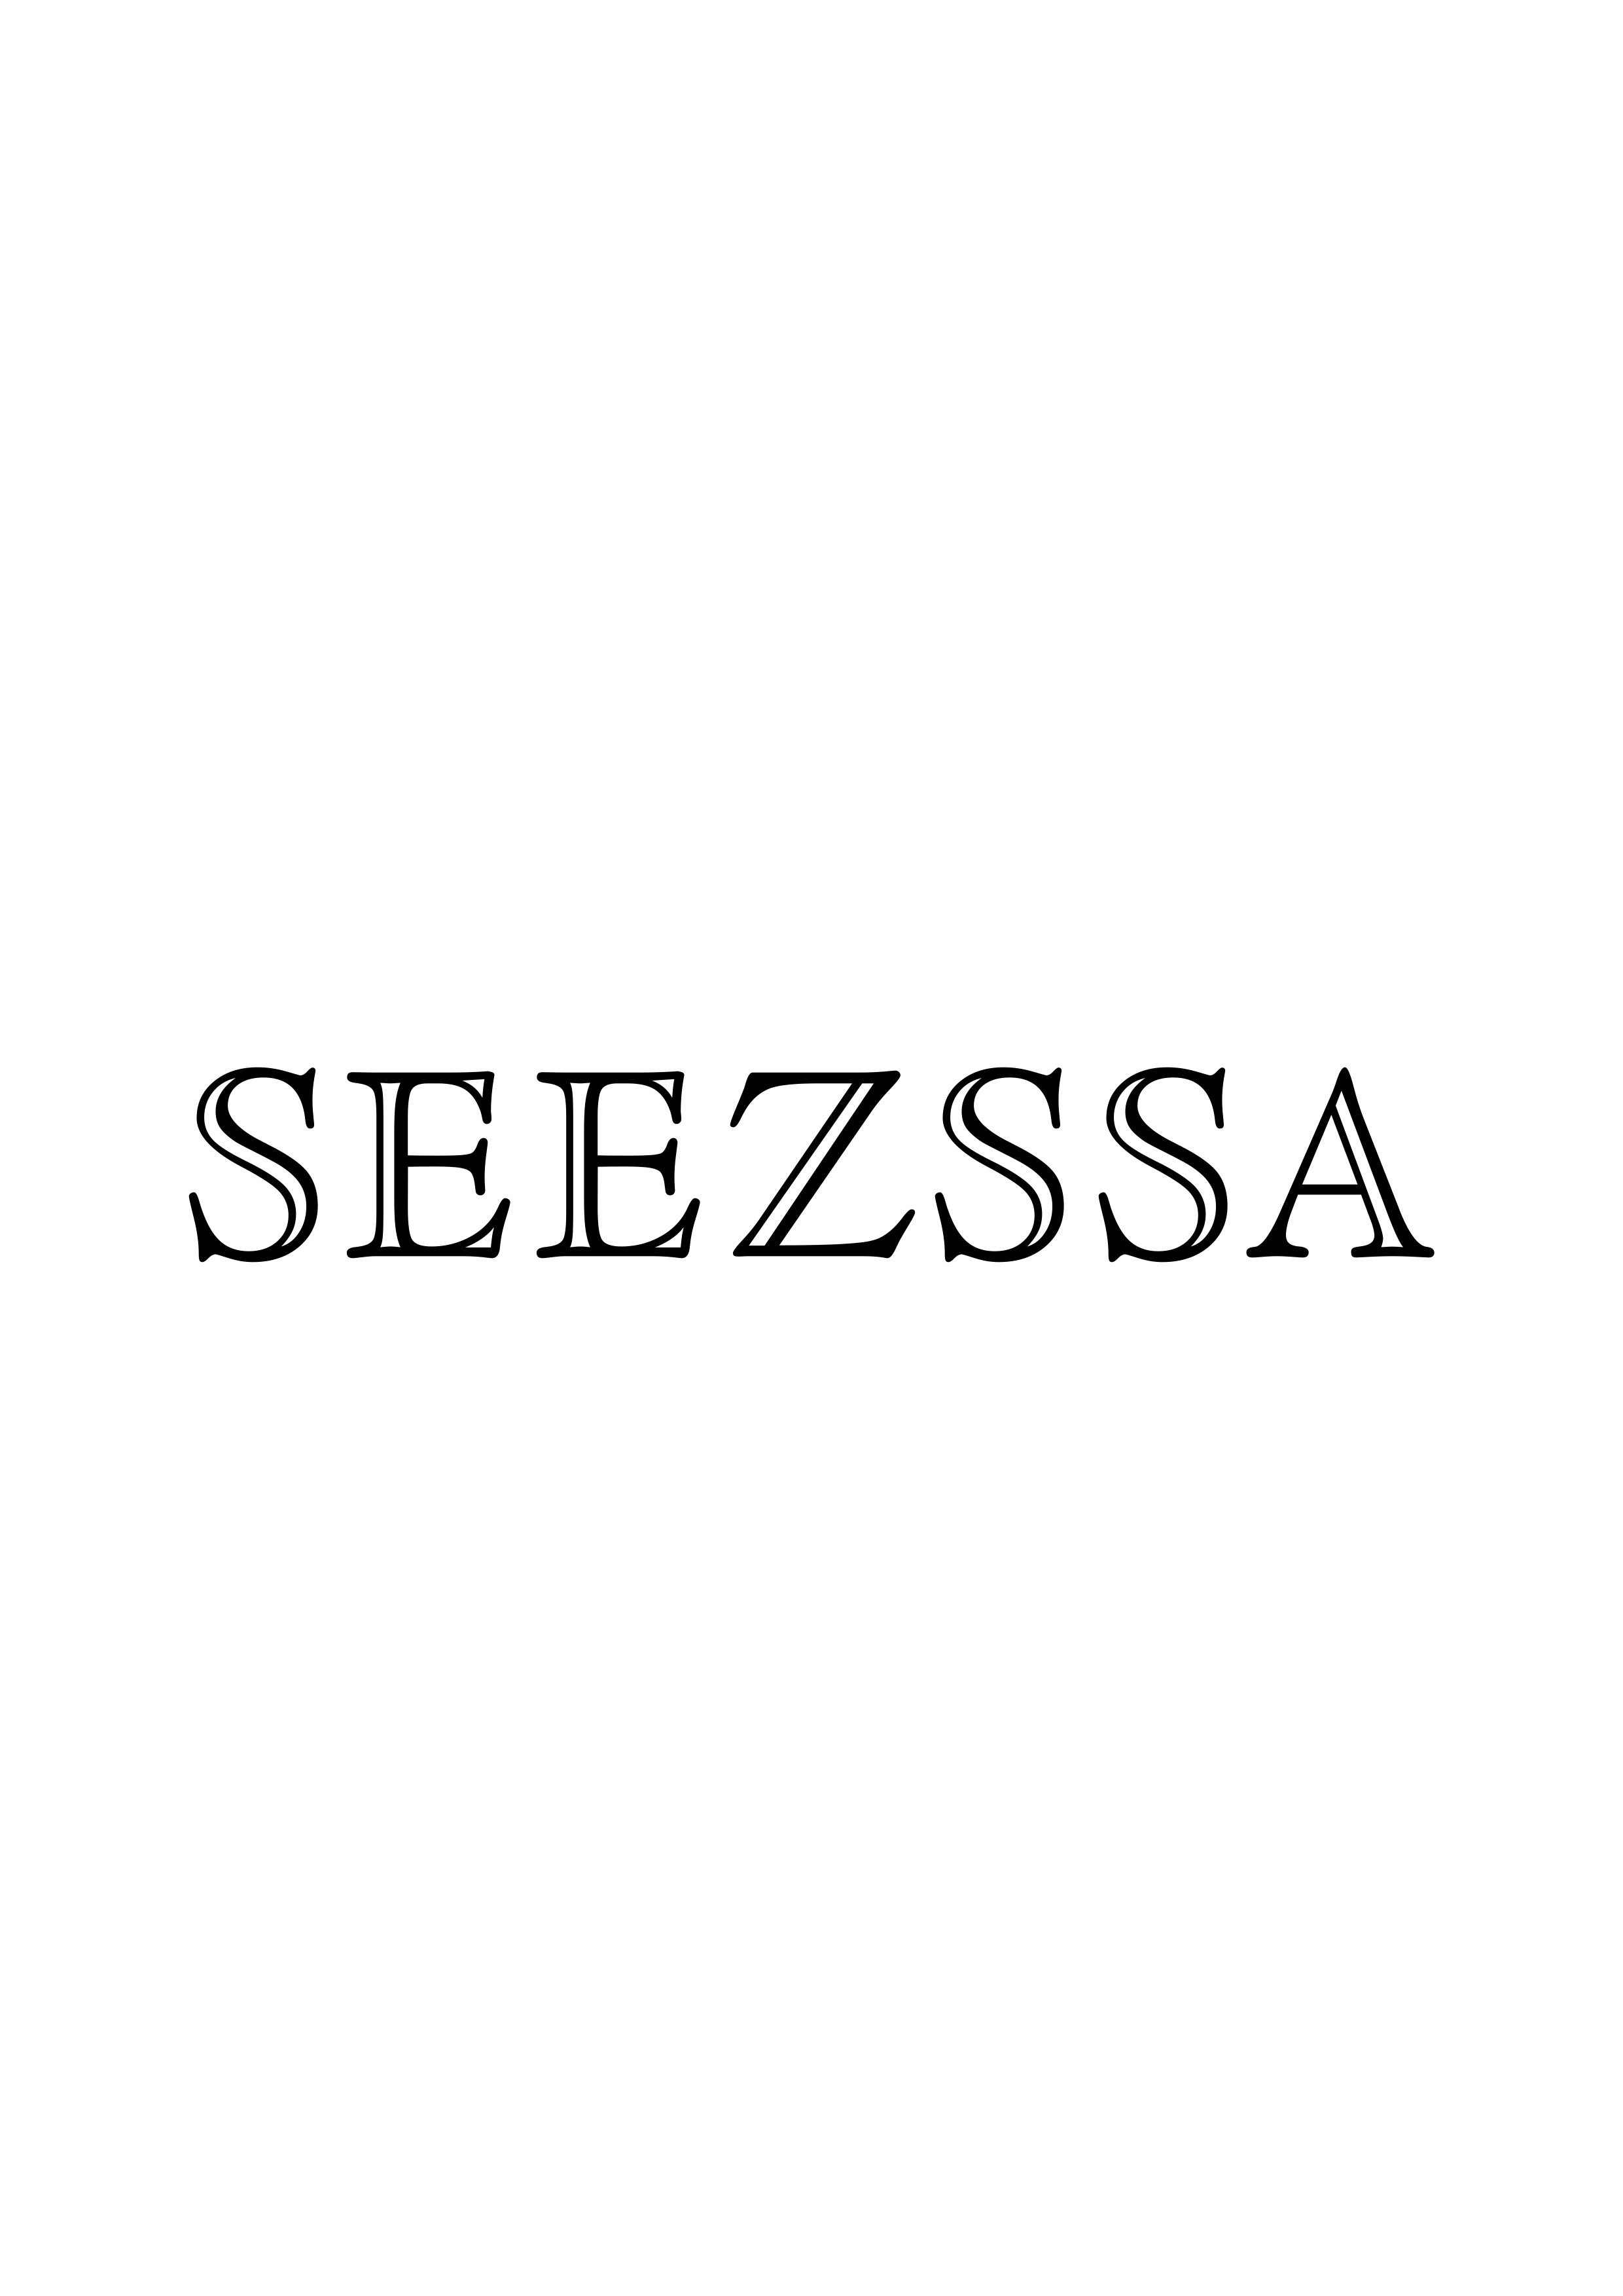 SEEZSSA